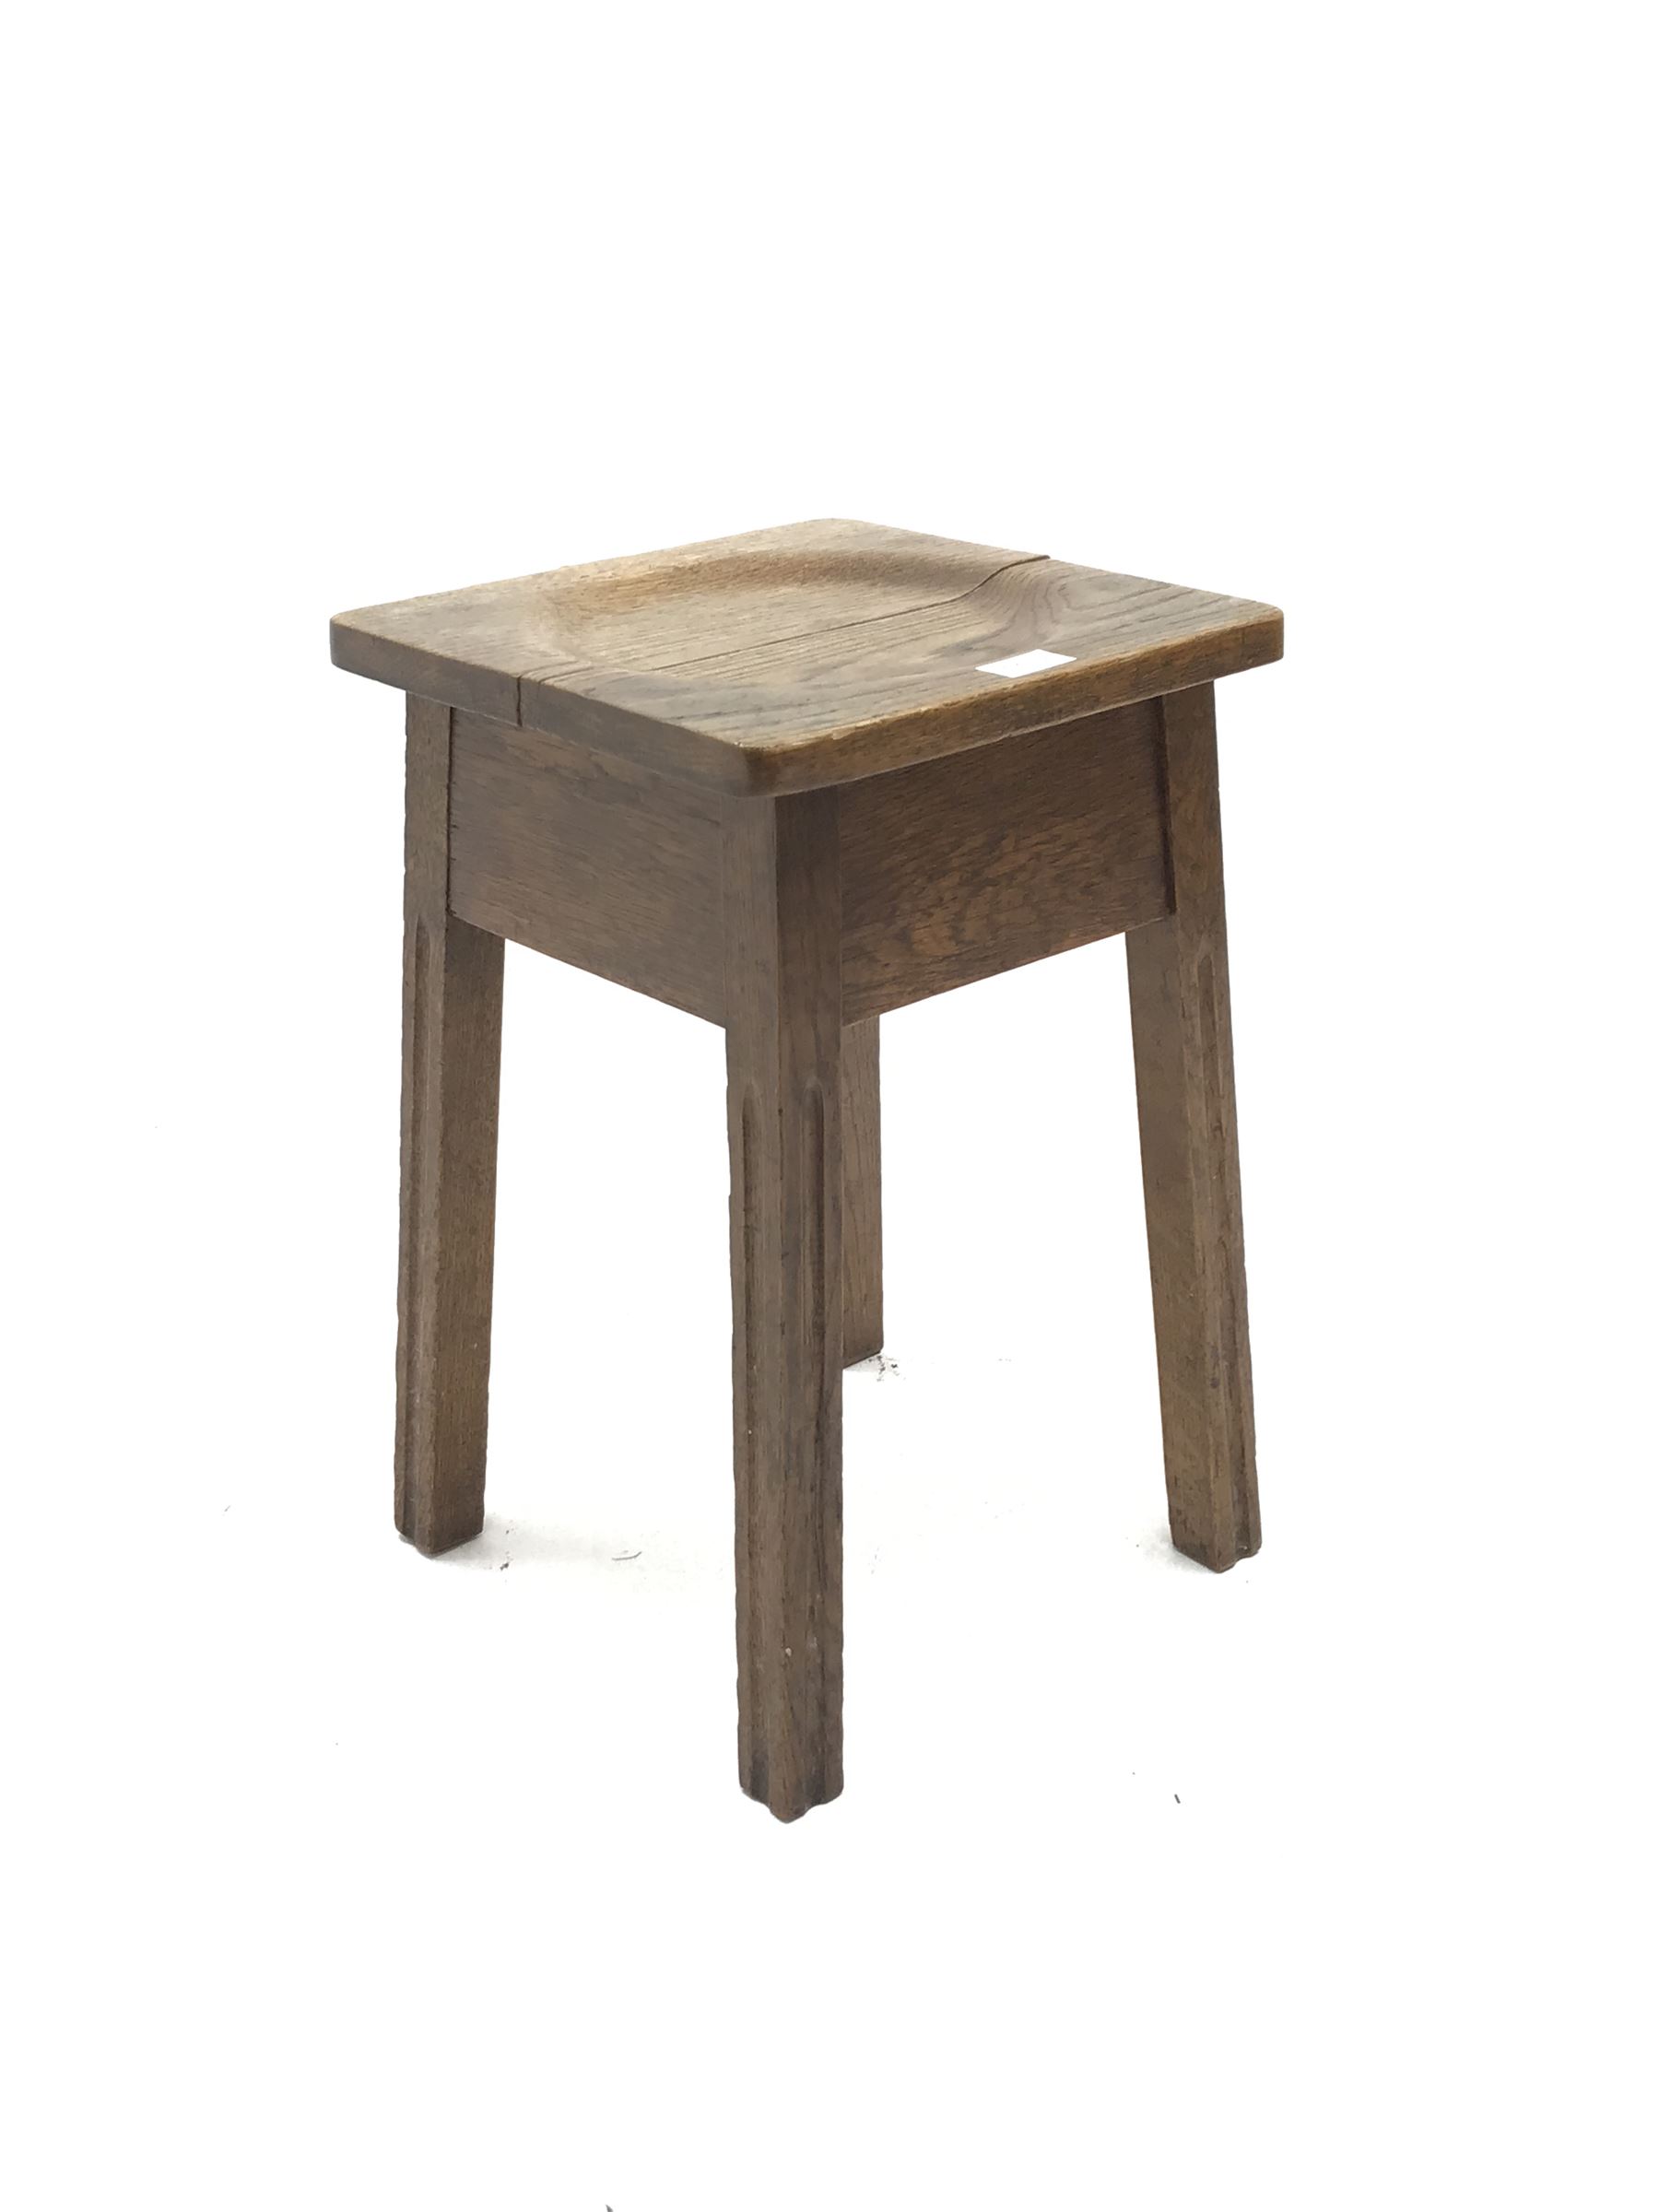 Small early 20th century oak stool